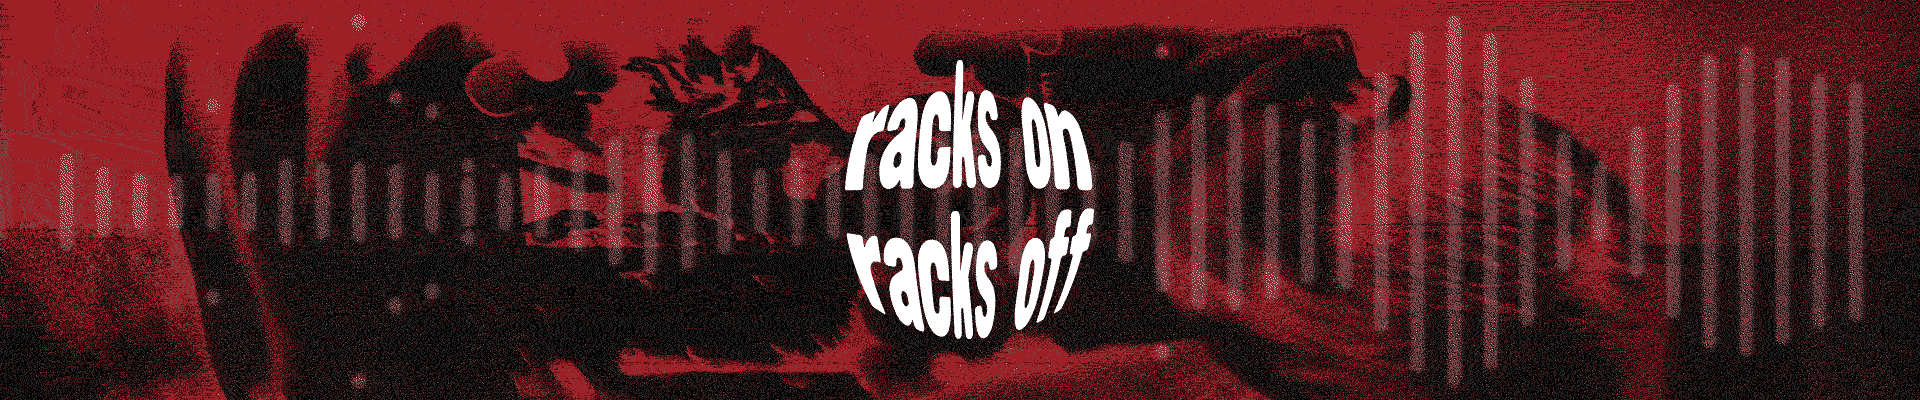 qUINT's podcast "Racks On Racks Off"